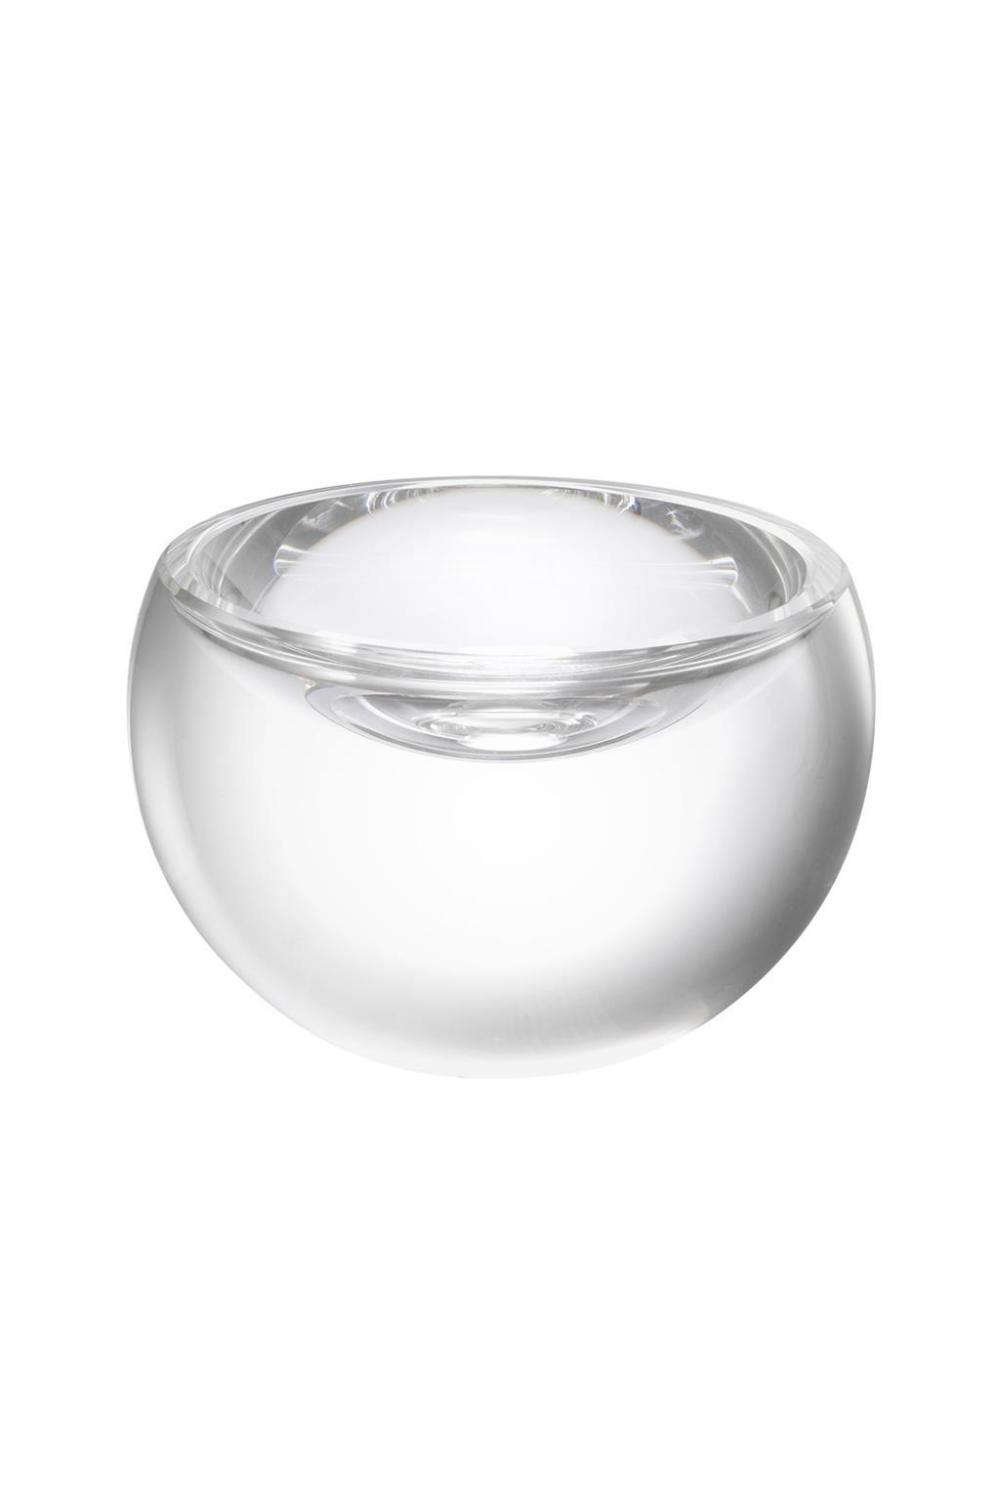 Crystal Glass Bowl | Eichholtz Vista | OROA